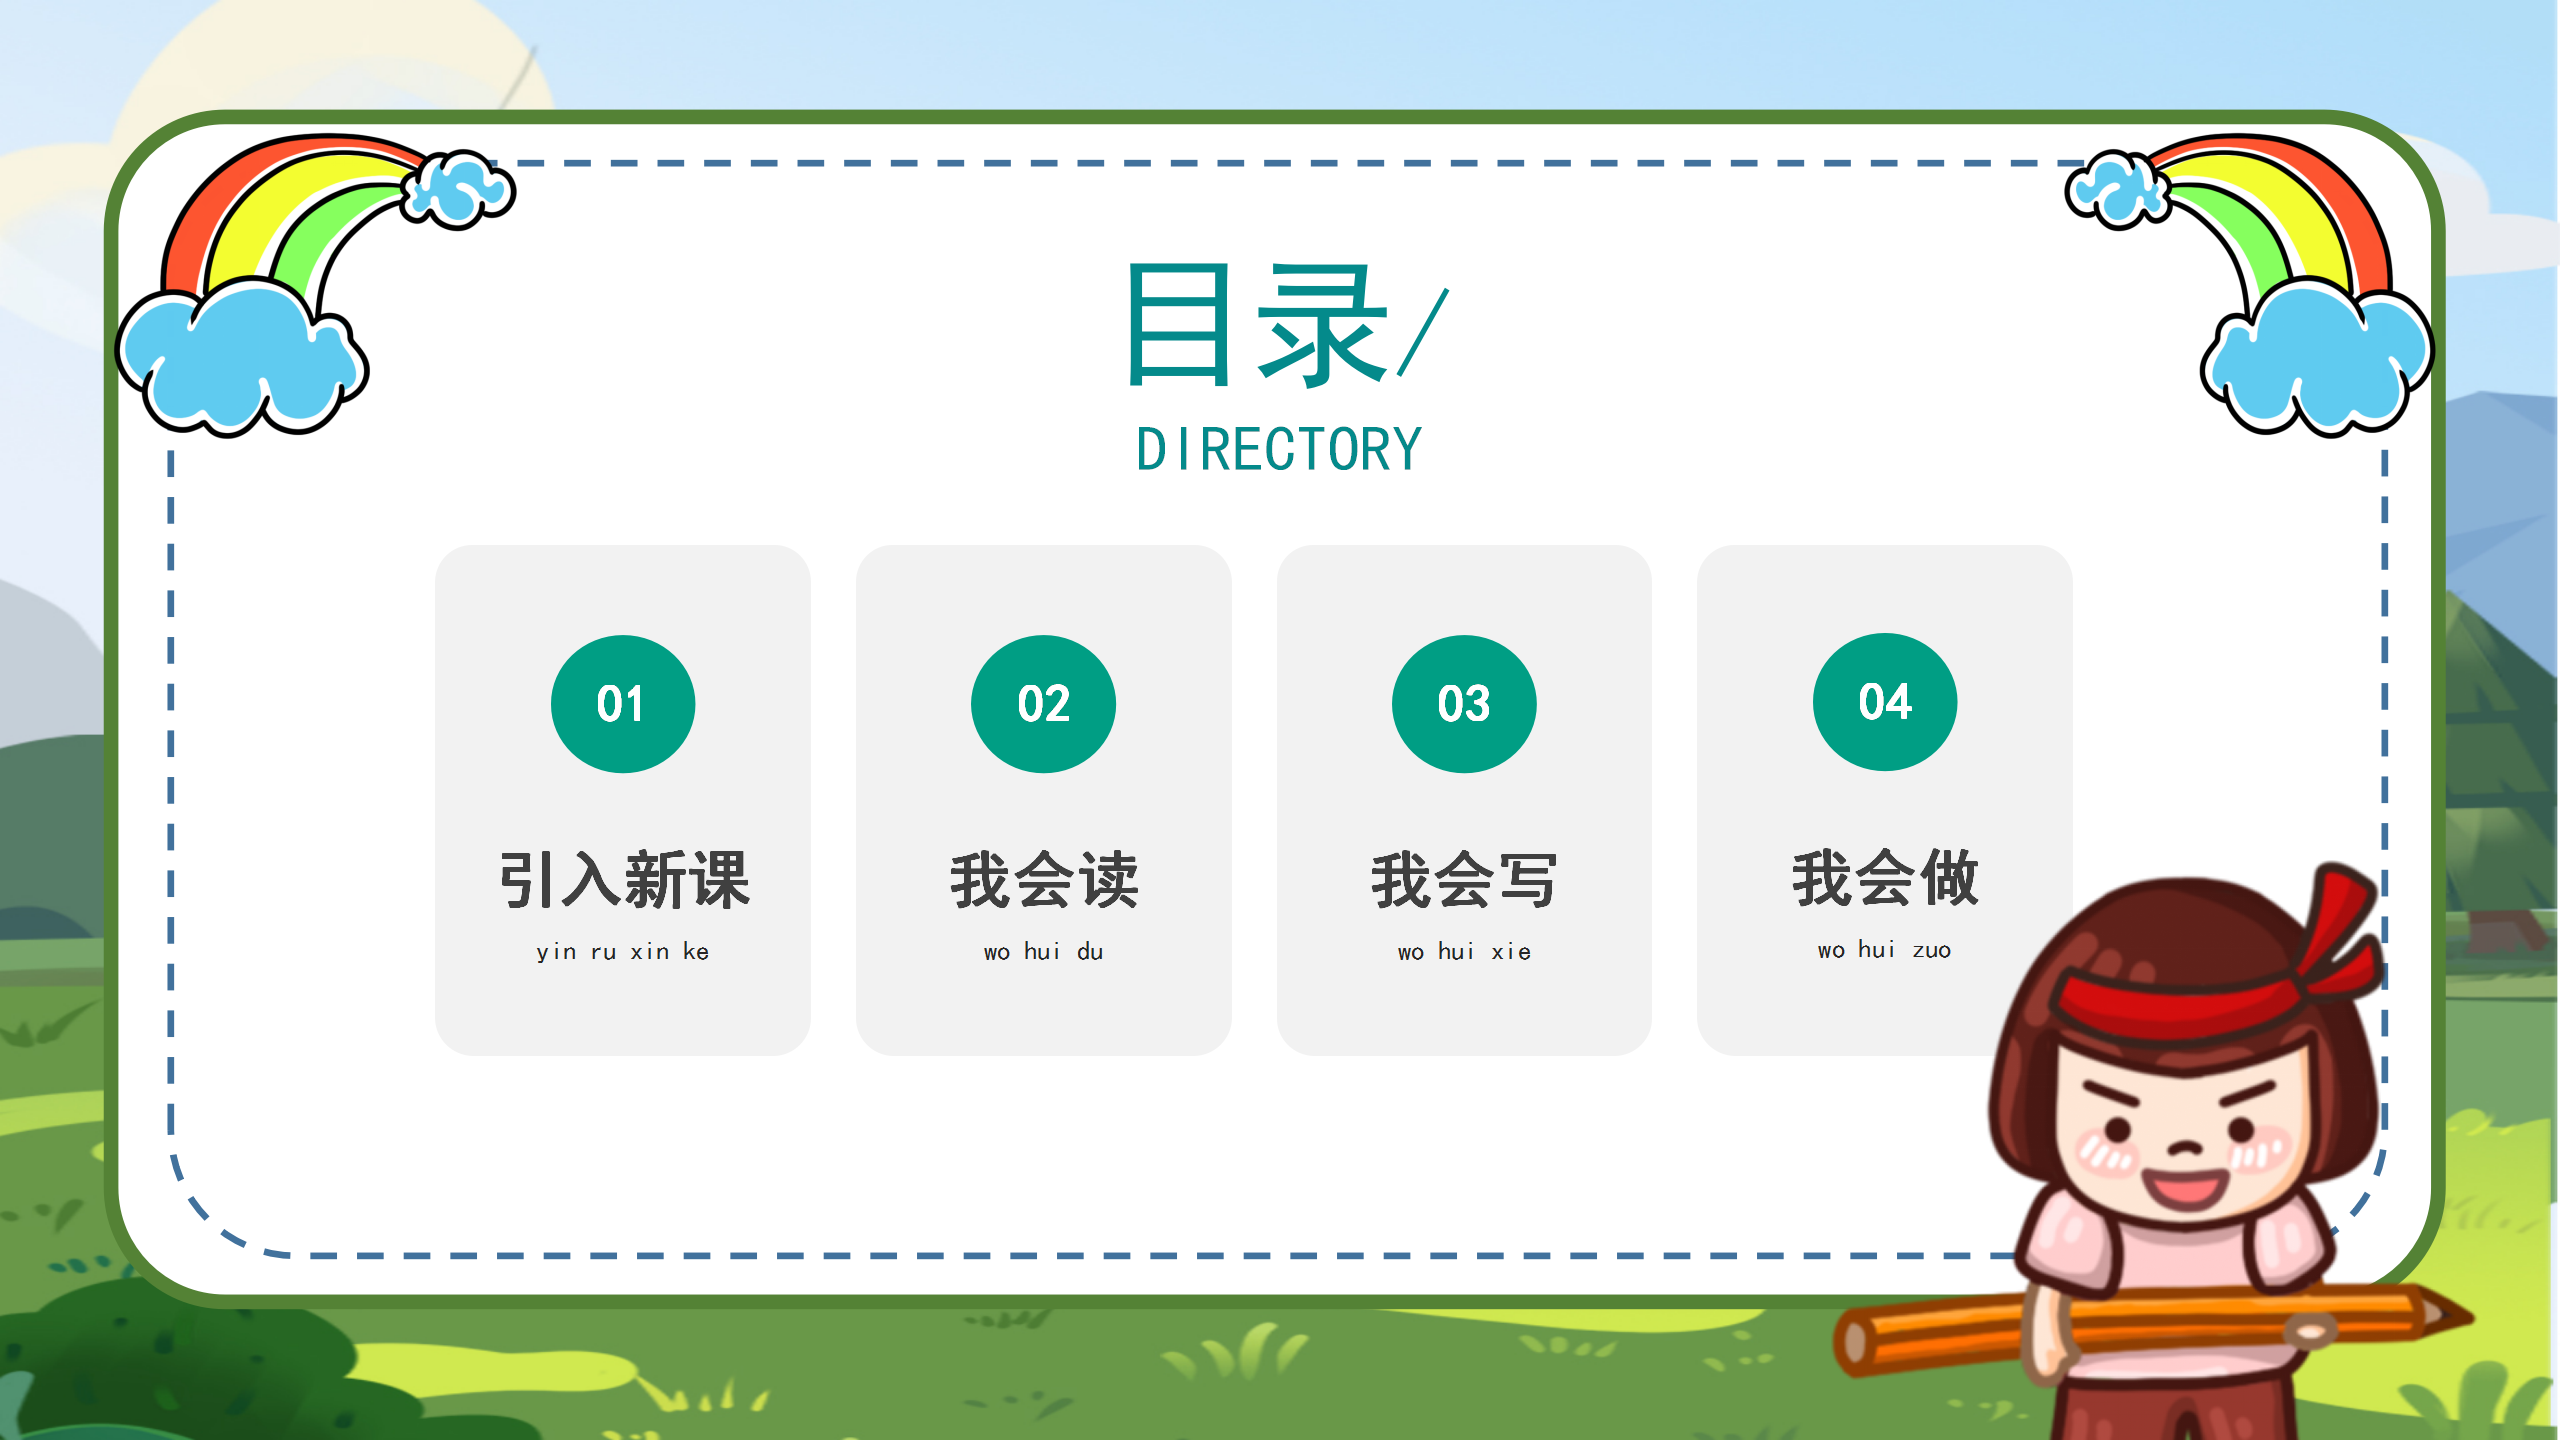 小学语文课件《aoouiu》汉语拼音PPT模板PPT课件下载